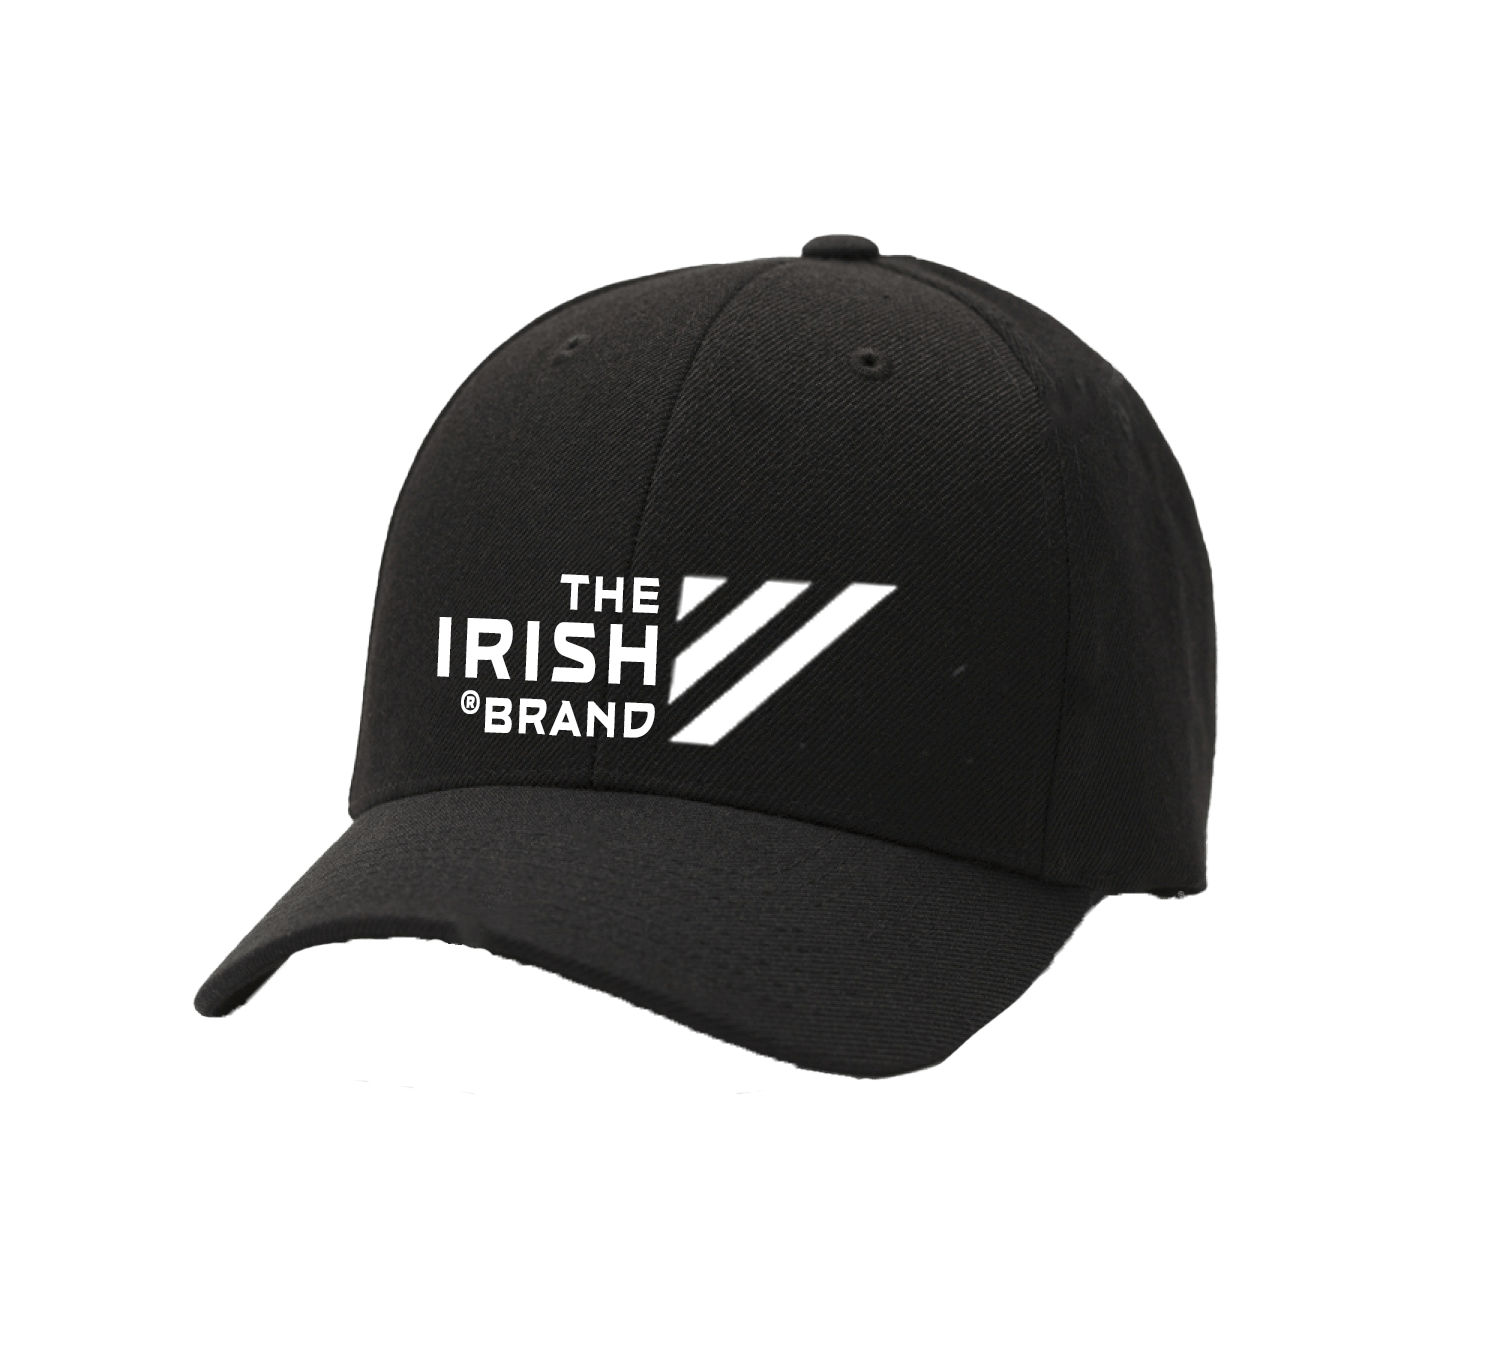 The Irish Brand Baseball Cap